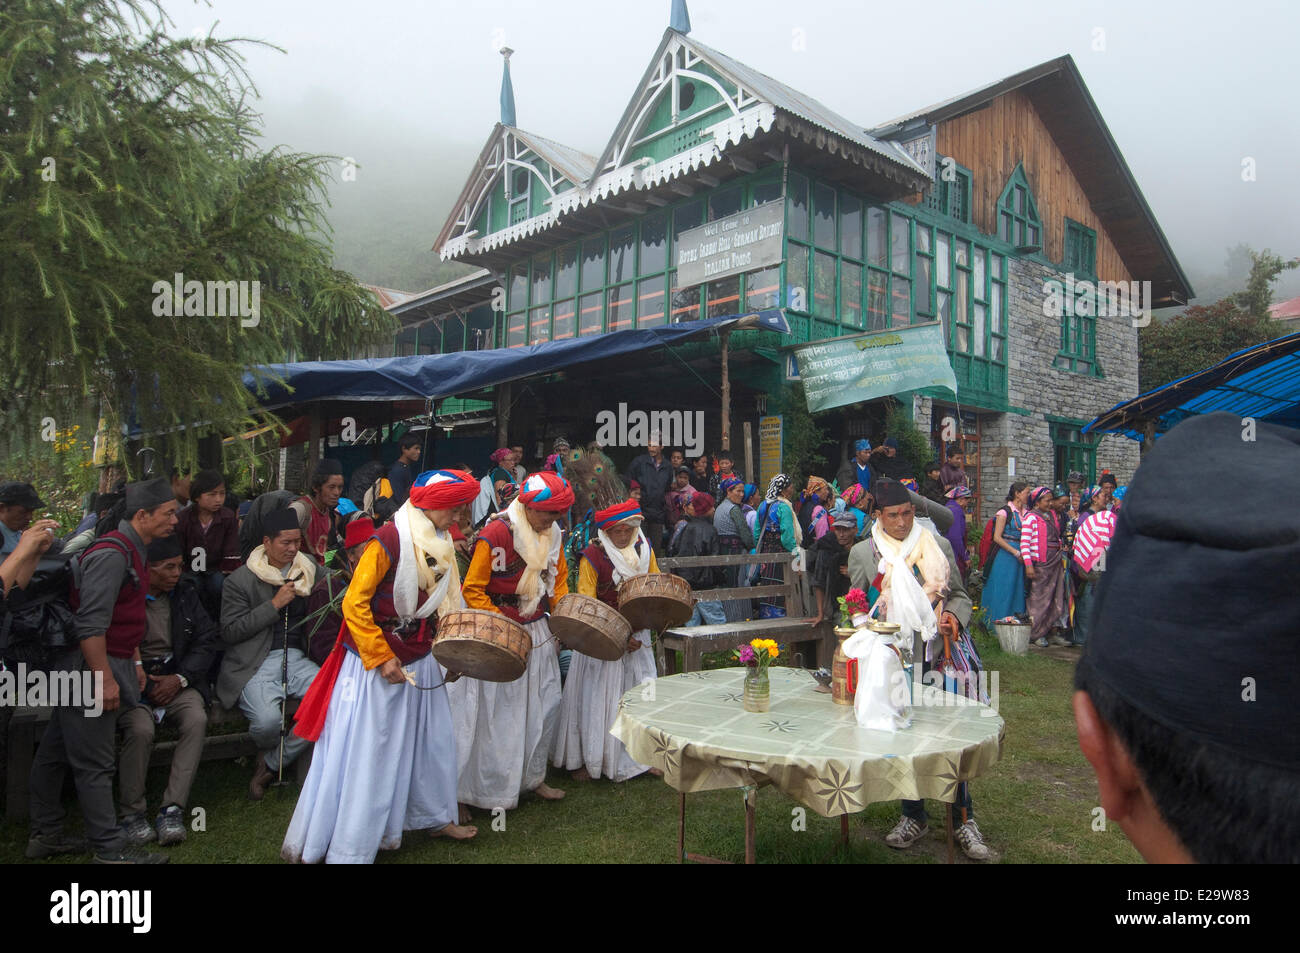 Il Nepal, zona di Bagmati, Langtang Lirung Mountain Range, Trisuli valley, sincretiche pellegrinaggio di Gosainkund, miscelazione Chamanism, Foto Stock